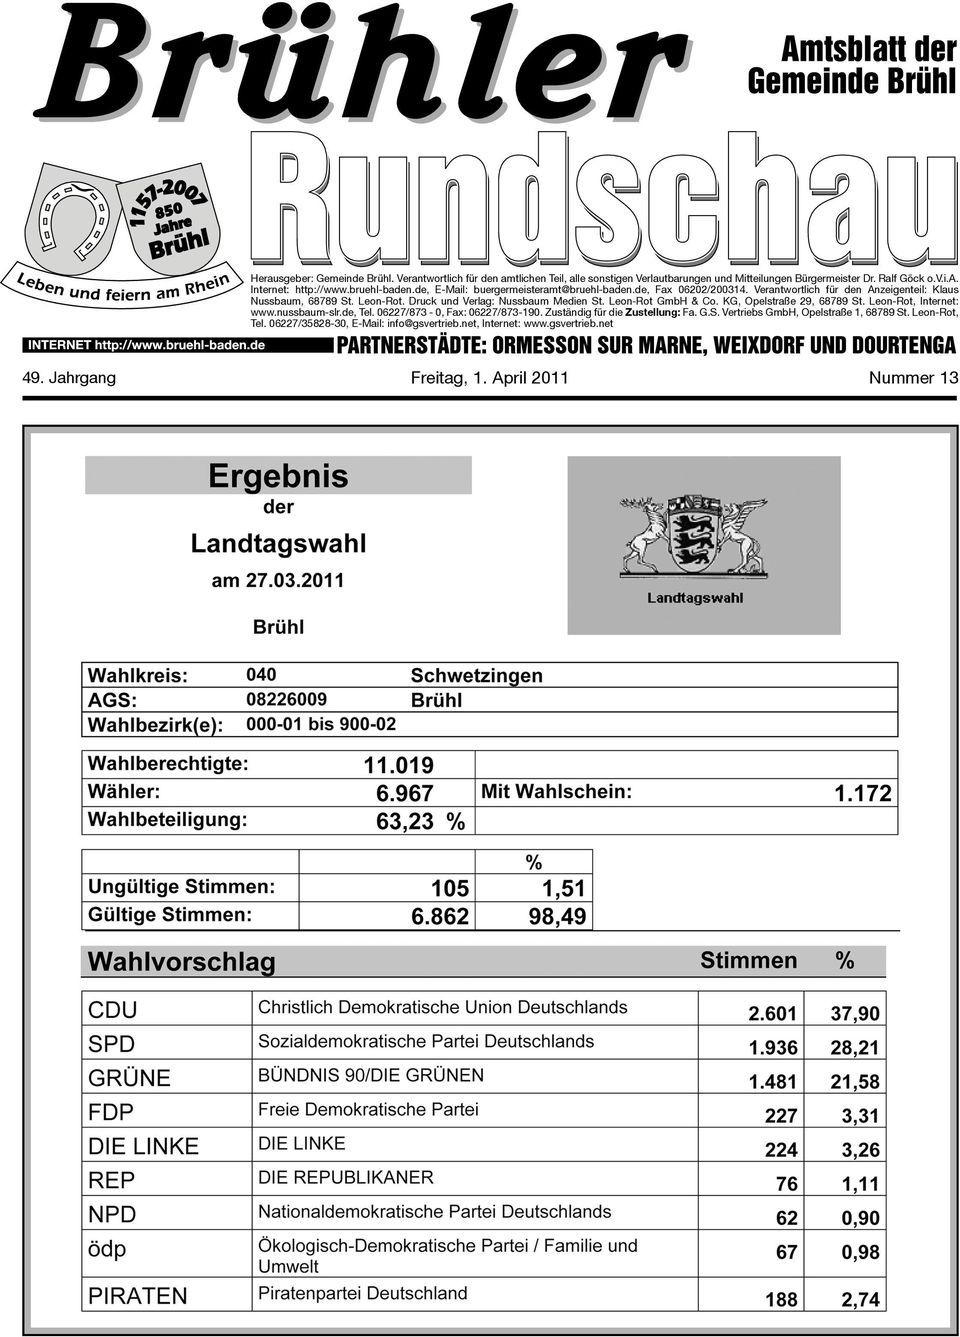 Druck und Verlag: Nussbaum Medien St. Leon-Rot GmbH & Co. KG, Opelstraße 29, 68789 St. Leon-Rot, Internet: www.nussbaum-slr.de, Tel. 06227/873-0, Fax: 06227/873-190.